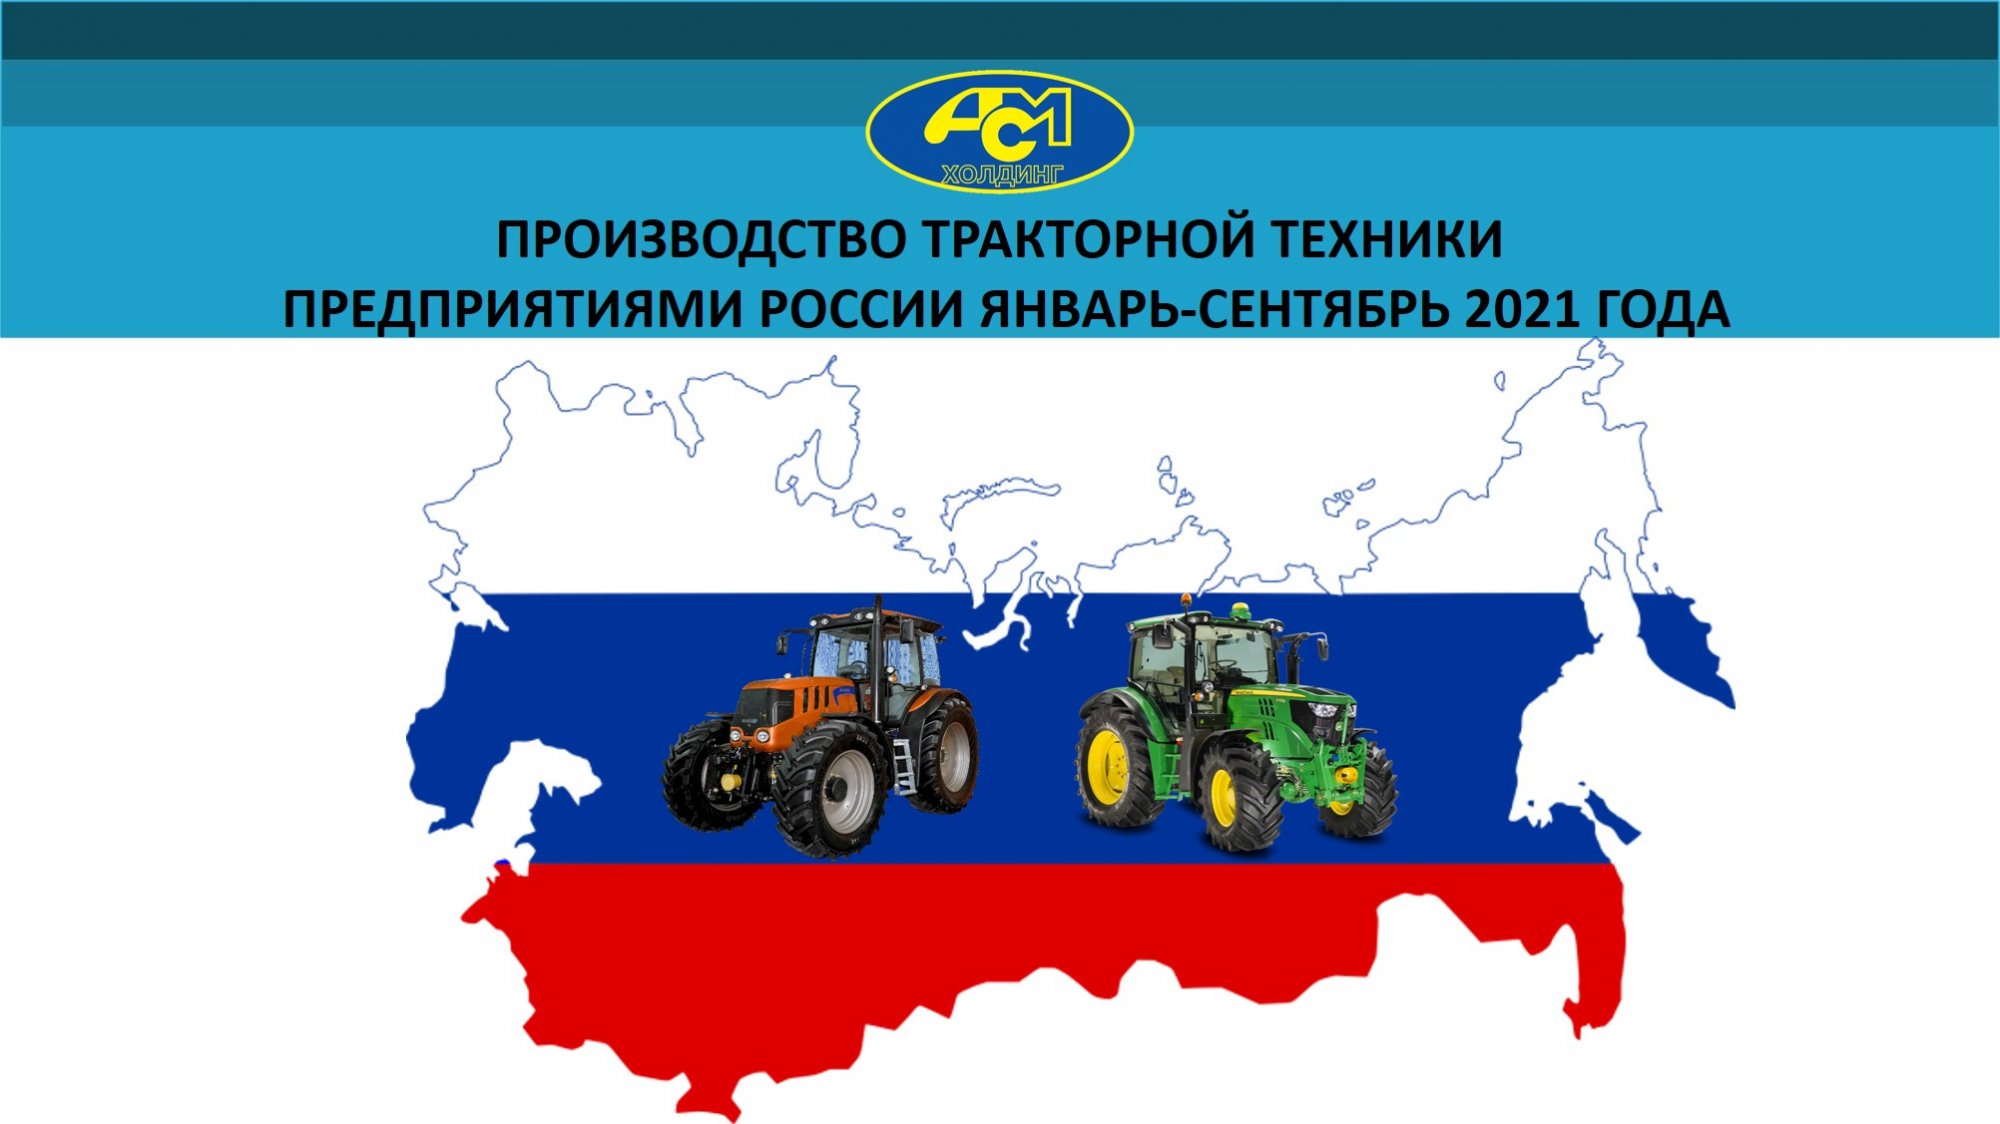 Производство тракторной техники в России за январь-сентябрь 2021 года